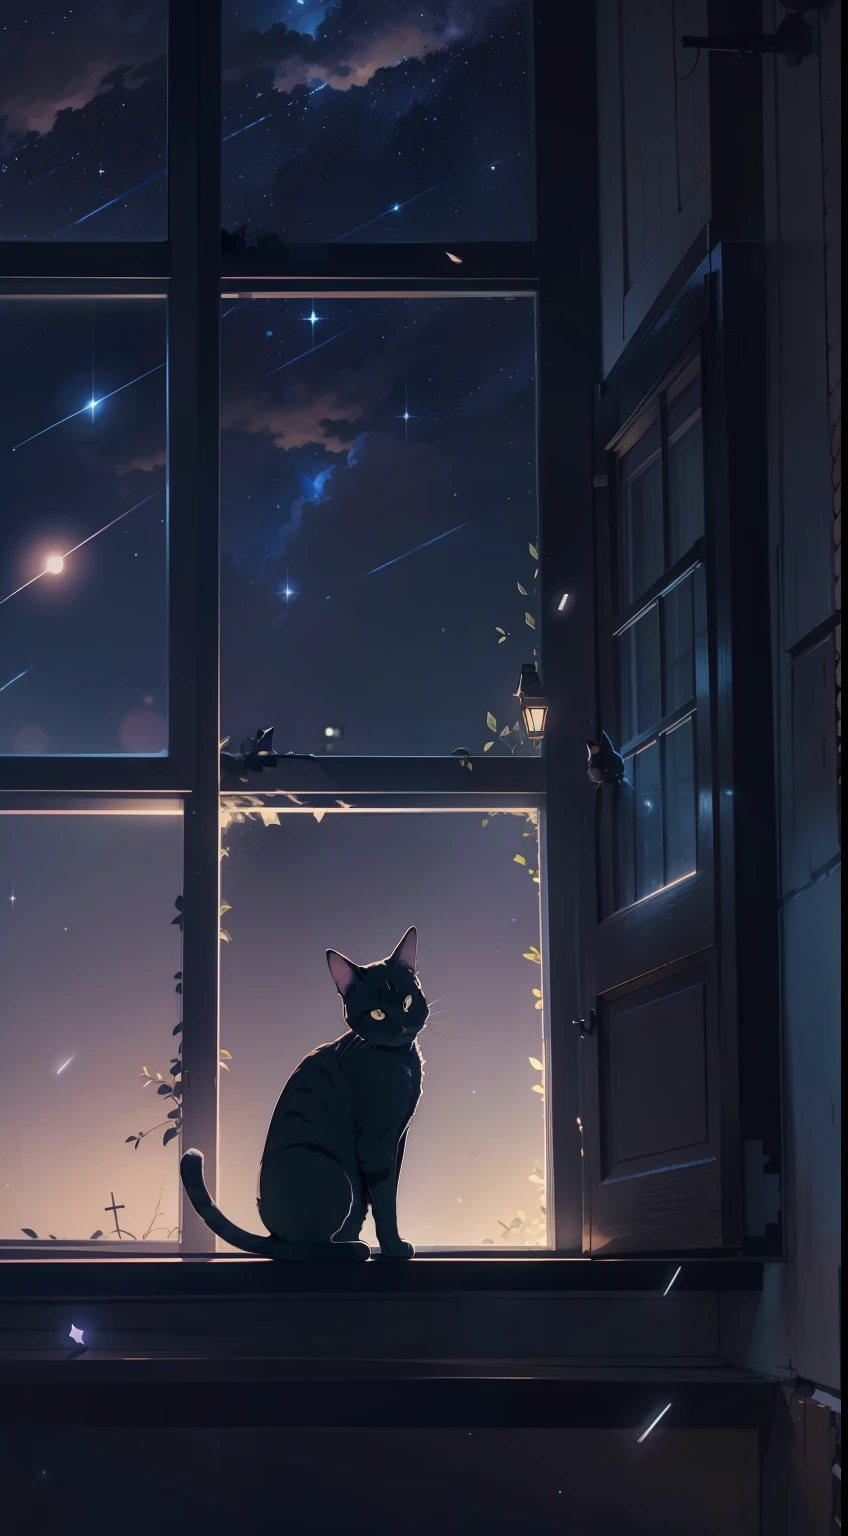 Eine kleine Katze kauert auf der Fensterbank, Sternschnuppen, der Nachthimmel, Anime-Stil, Chiaroscuro, Filmische Beleuchtung, Hintergrundbeleuchtung, Silhouette, von unten, 8k, super detail, genau, beste Qualität, hohe Details